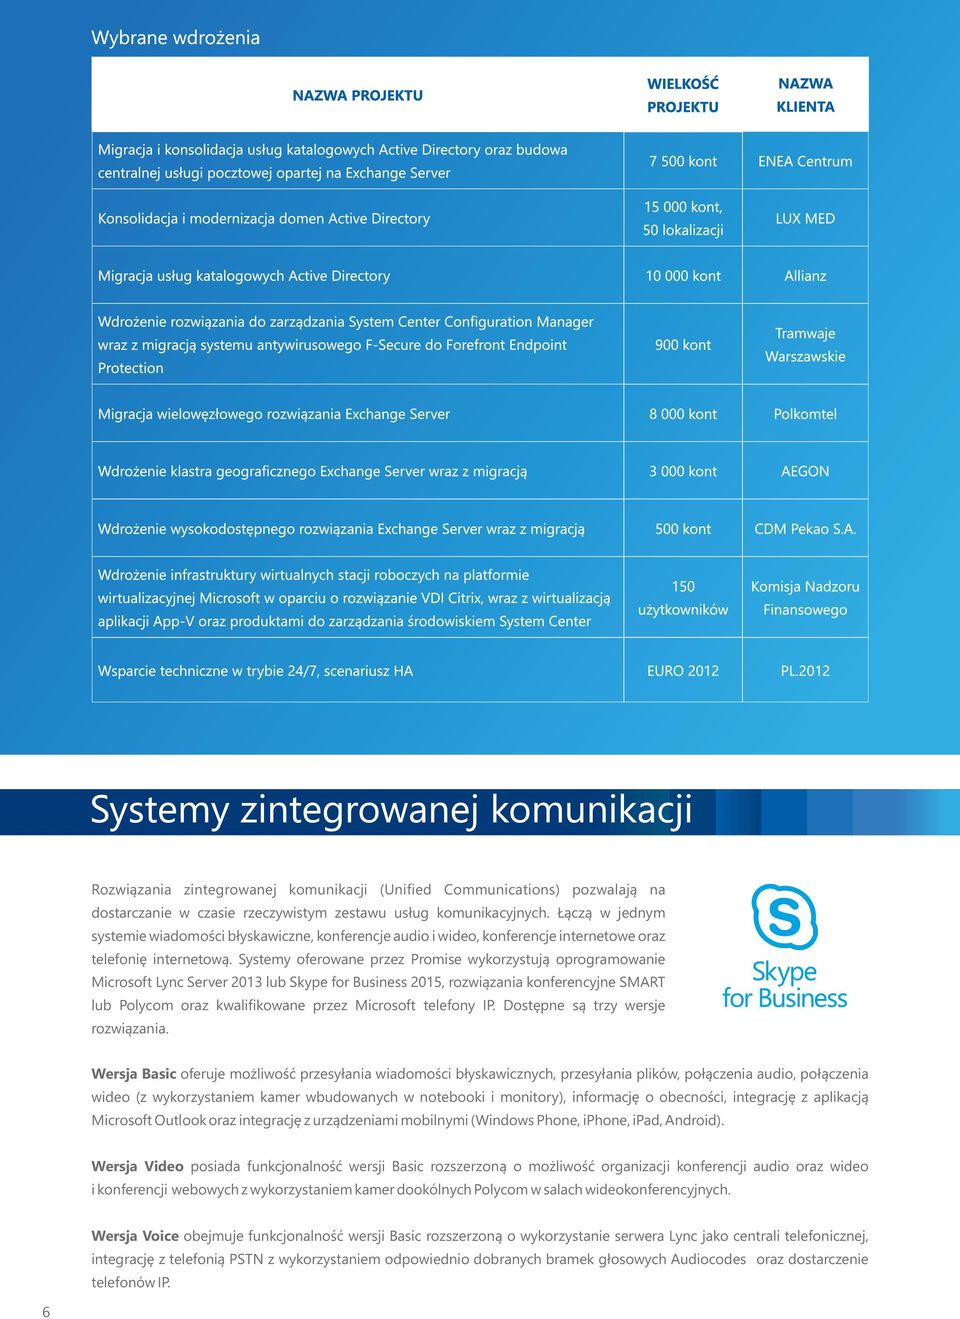 Systemy oferowane przez Promise wykorzystują oprogramowanie Microsoft Lync Server 2013 lub Skype for Business 2015, rozwiązania konferencyjne SMART lub Polycom oraz kwalifikowane przez Microsoft